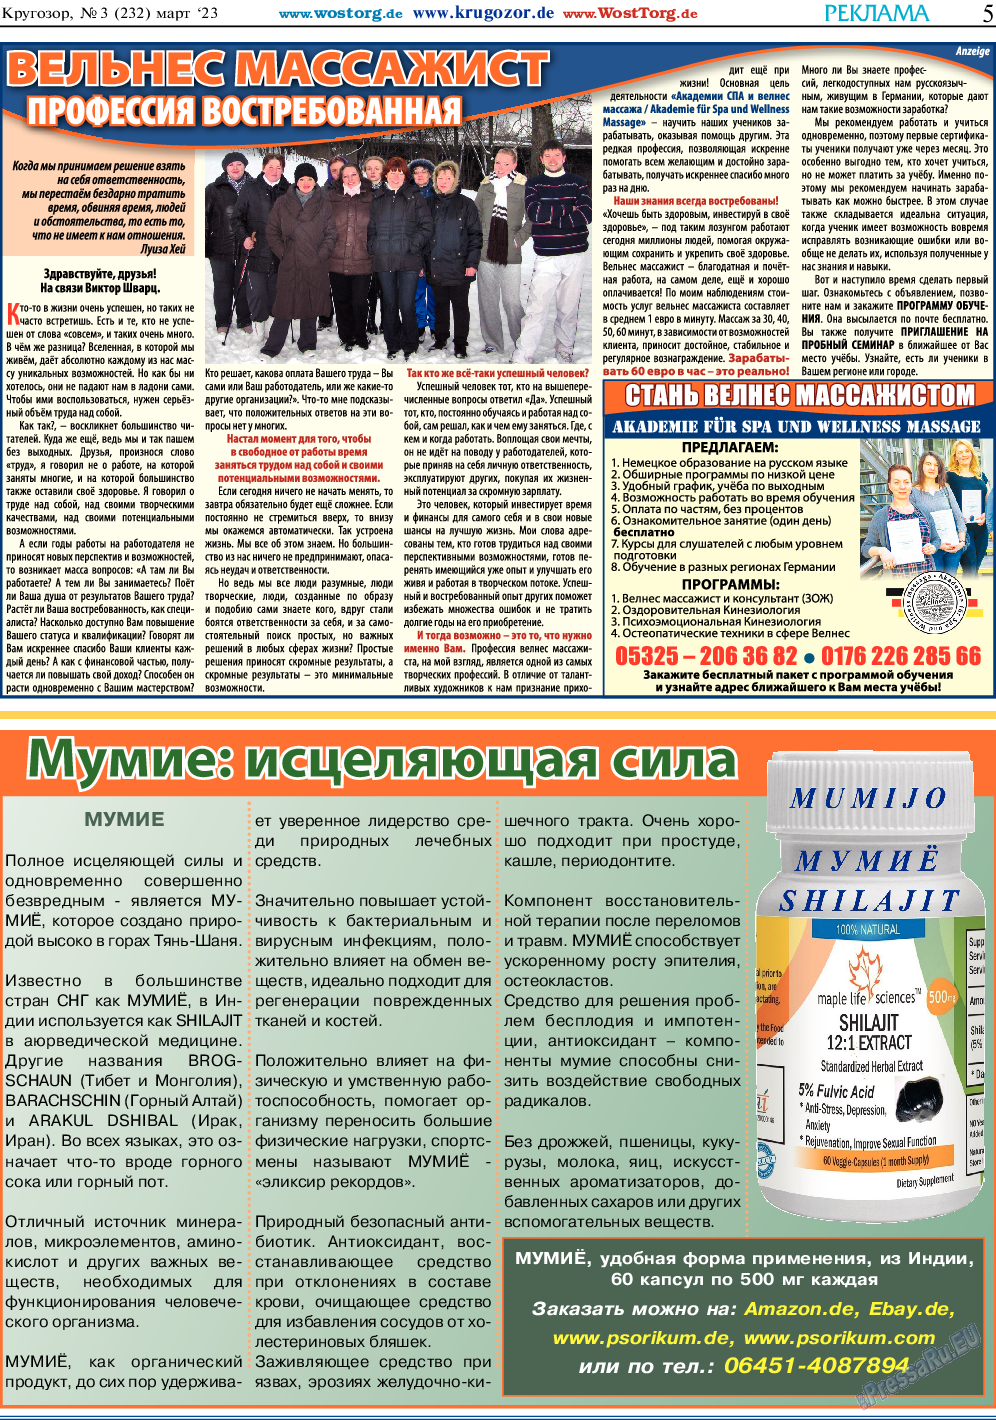 Кругозор, газета. 2023 №3 стр.5